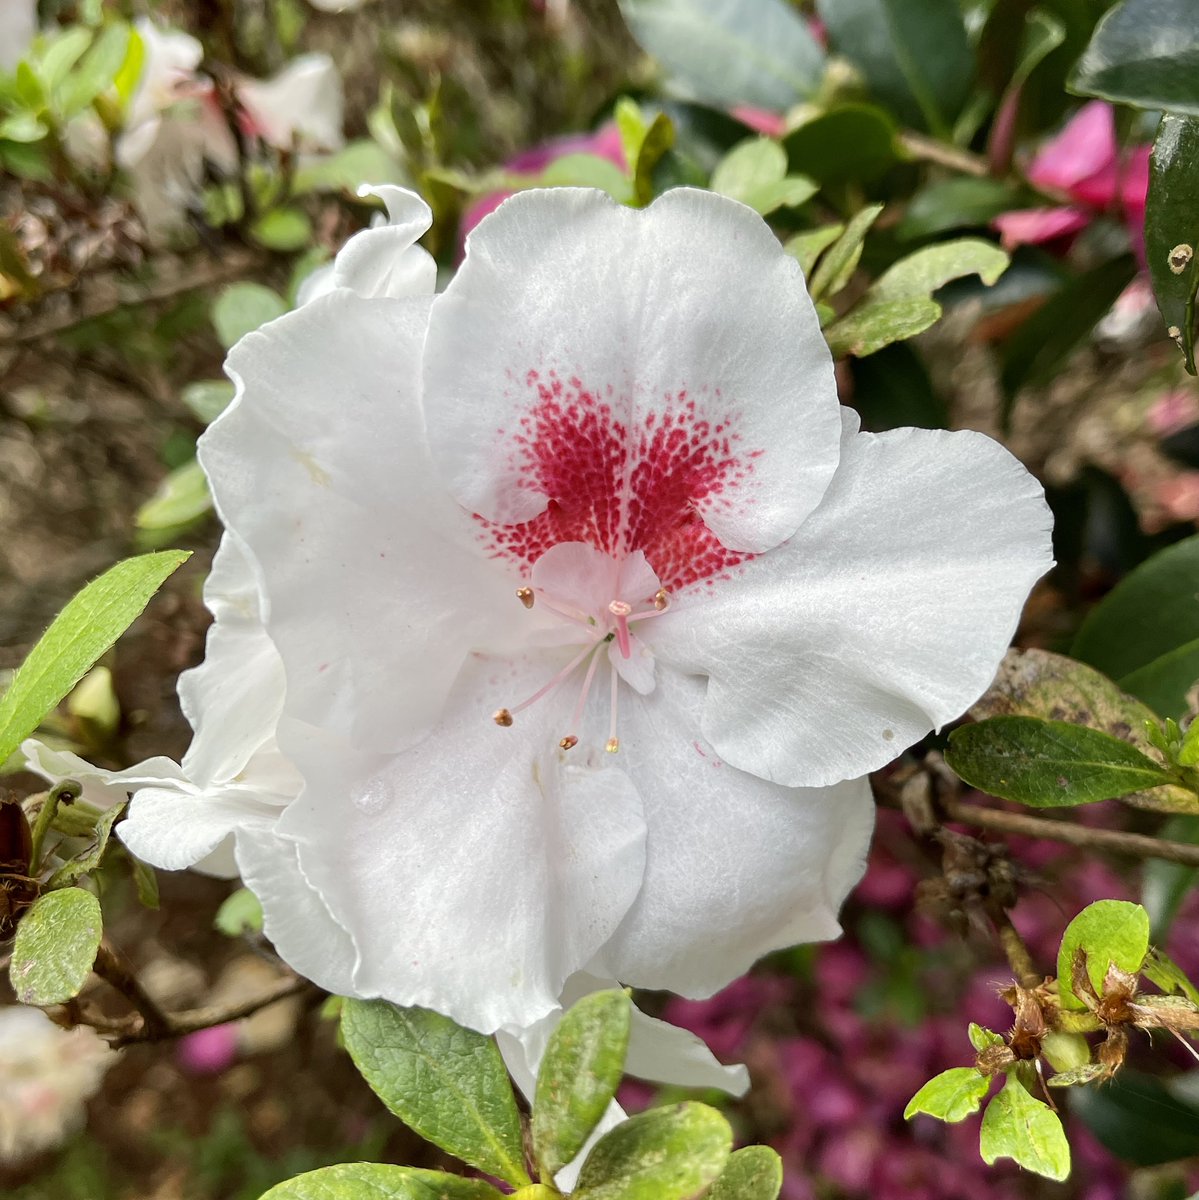 My brother’s gorgeous Tamborine Mountain garden. A place to breath out. #garden #camellias #azalea #tamborinemountain